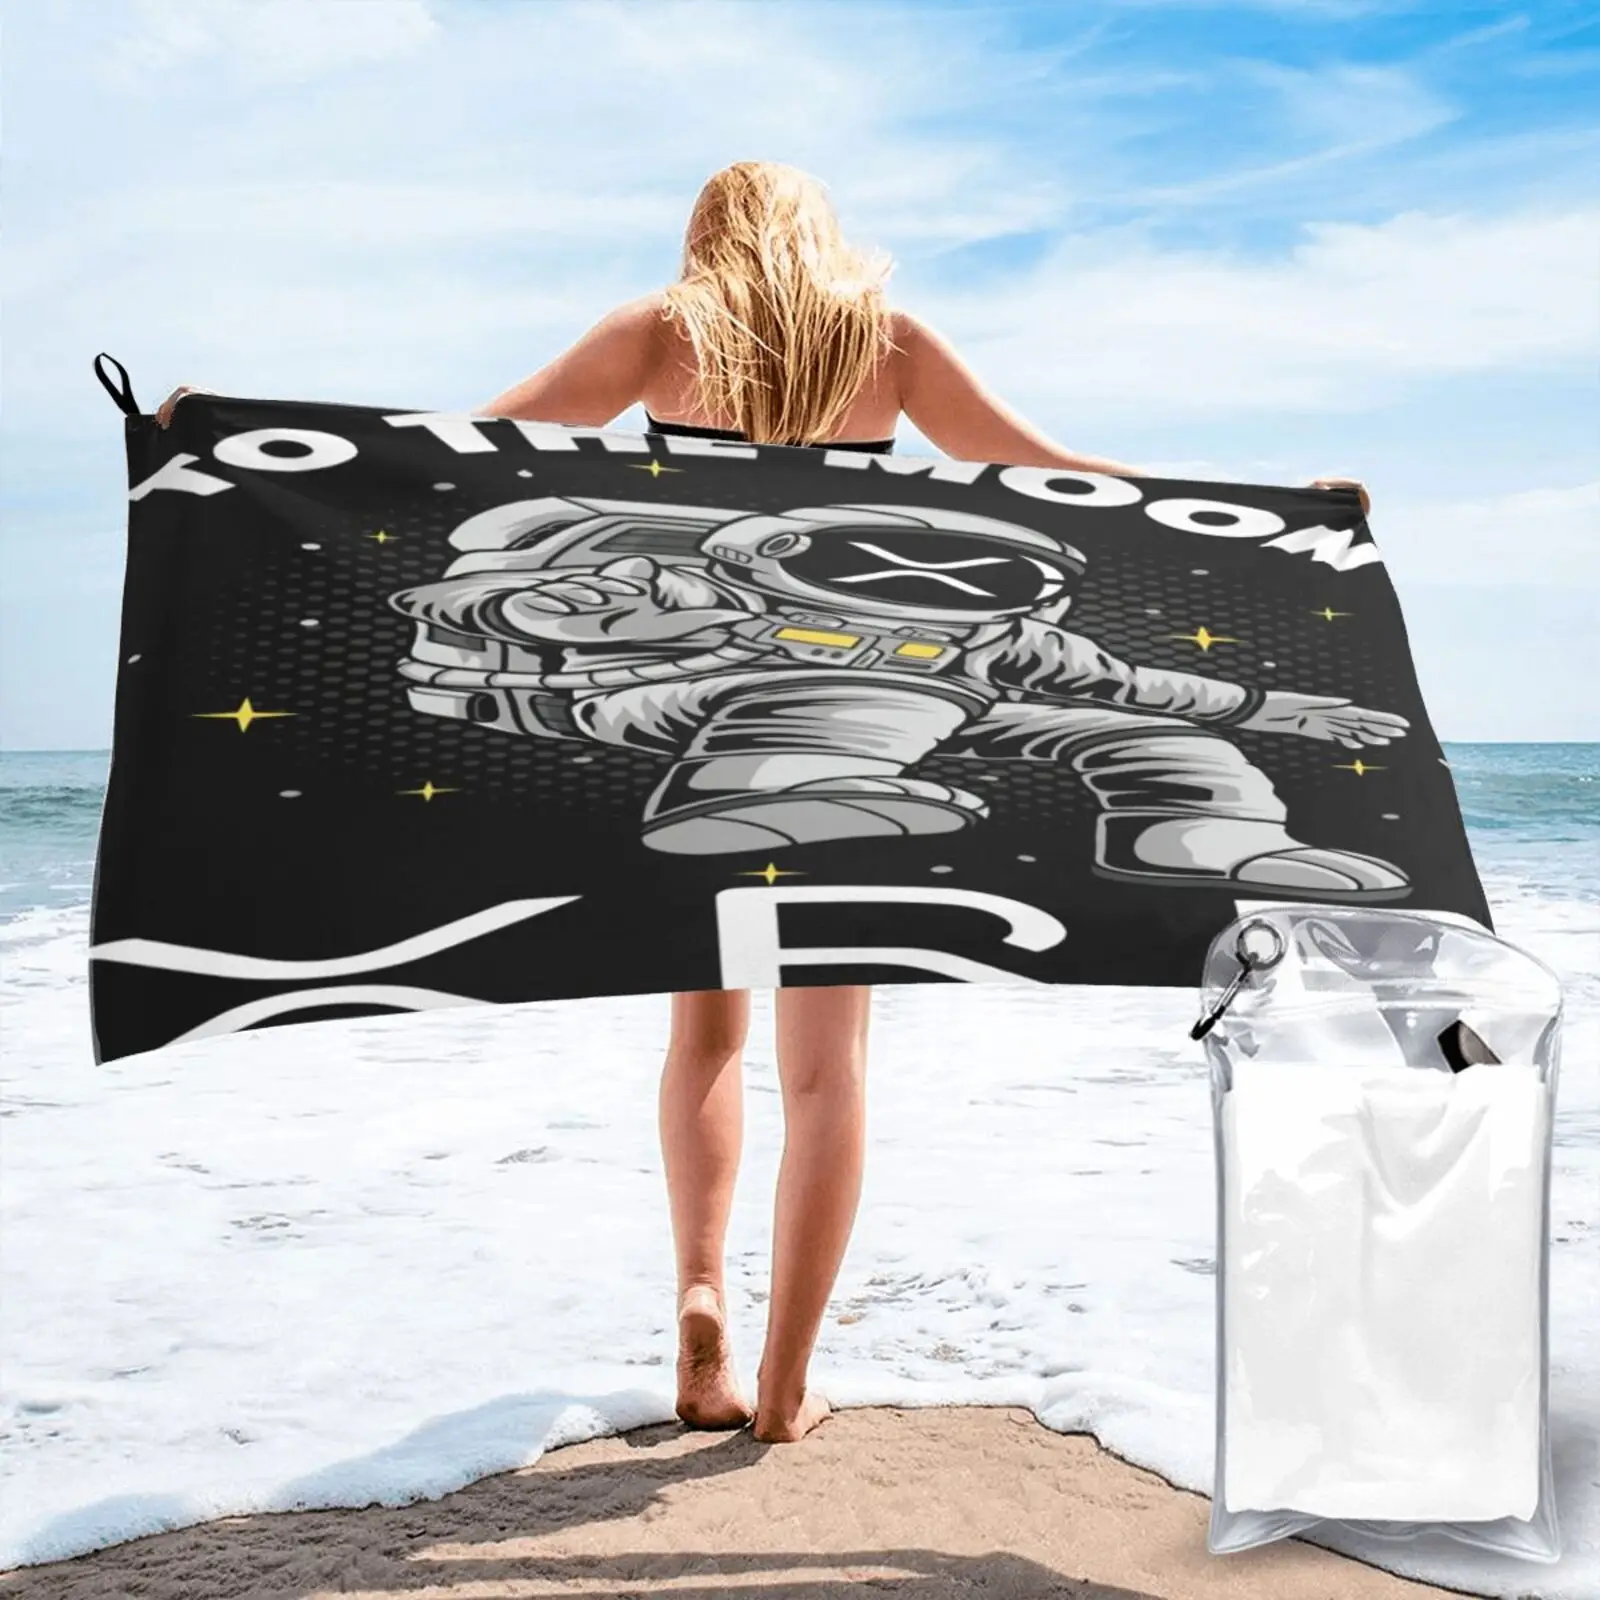 

Полотенце Xrp с волнами от Луны Xrp, морское пляжное полотенце, Большое банное полотенце, Пляжная накидка, полотенце для волос, пляжное полотен...